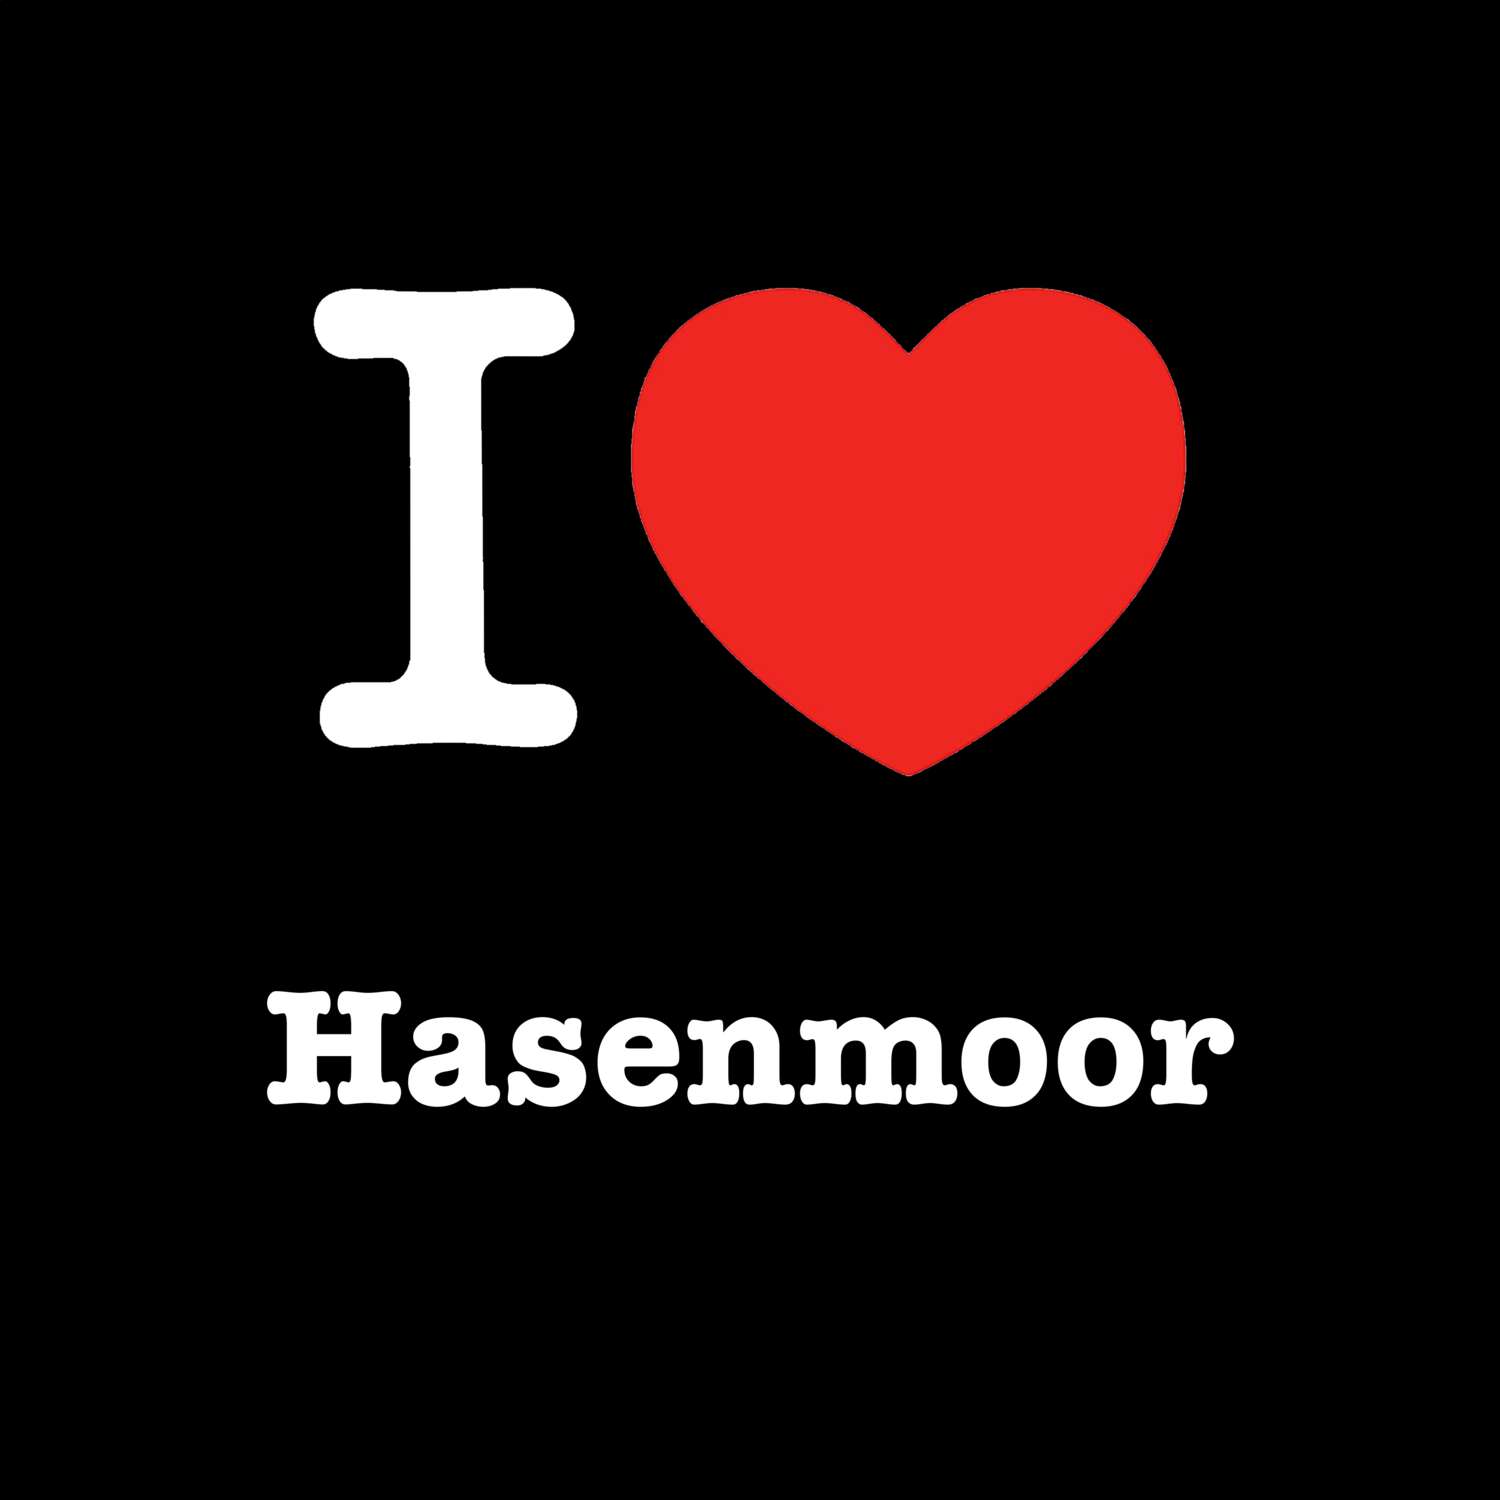 Hasenmoor T-Shirt »I love«